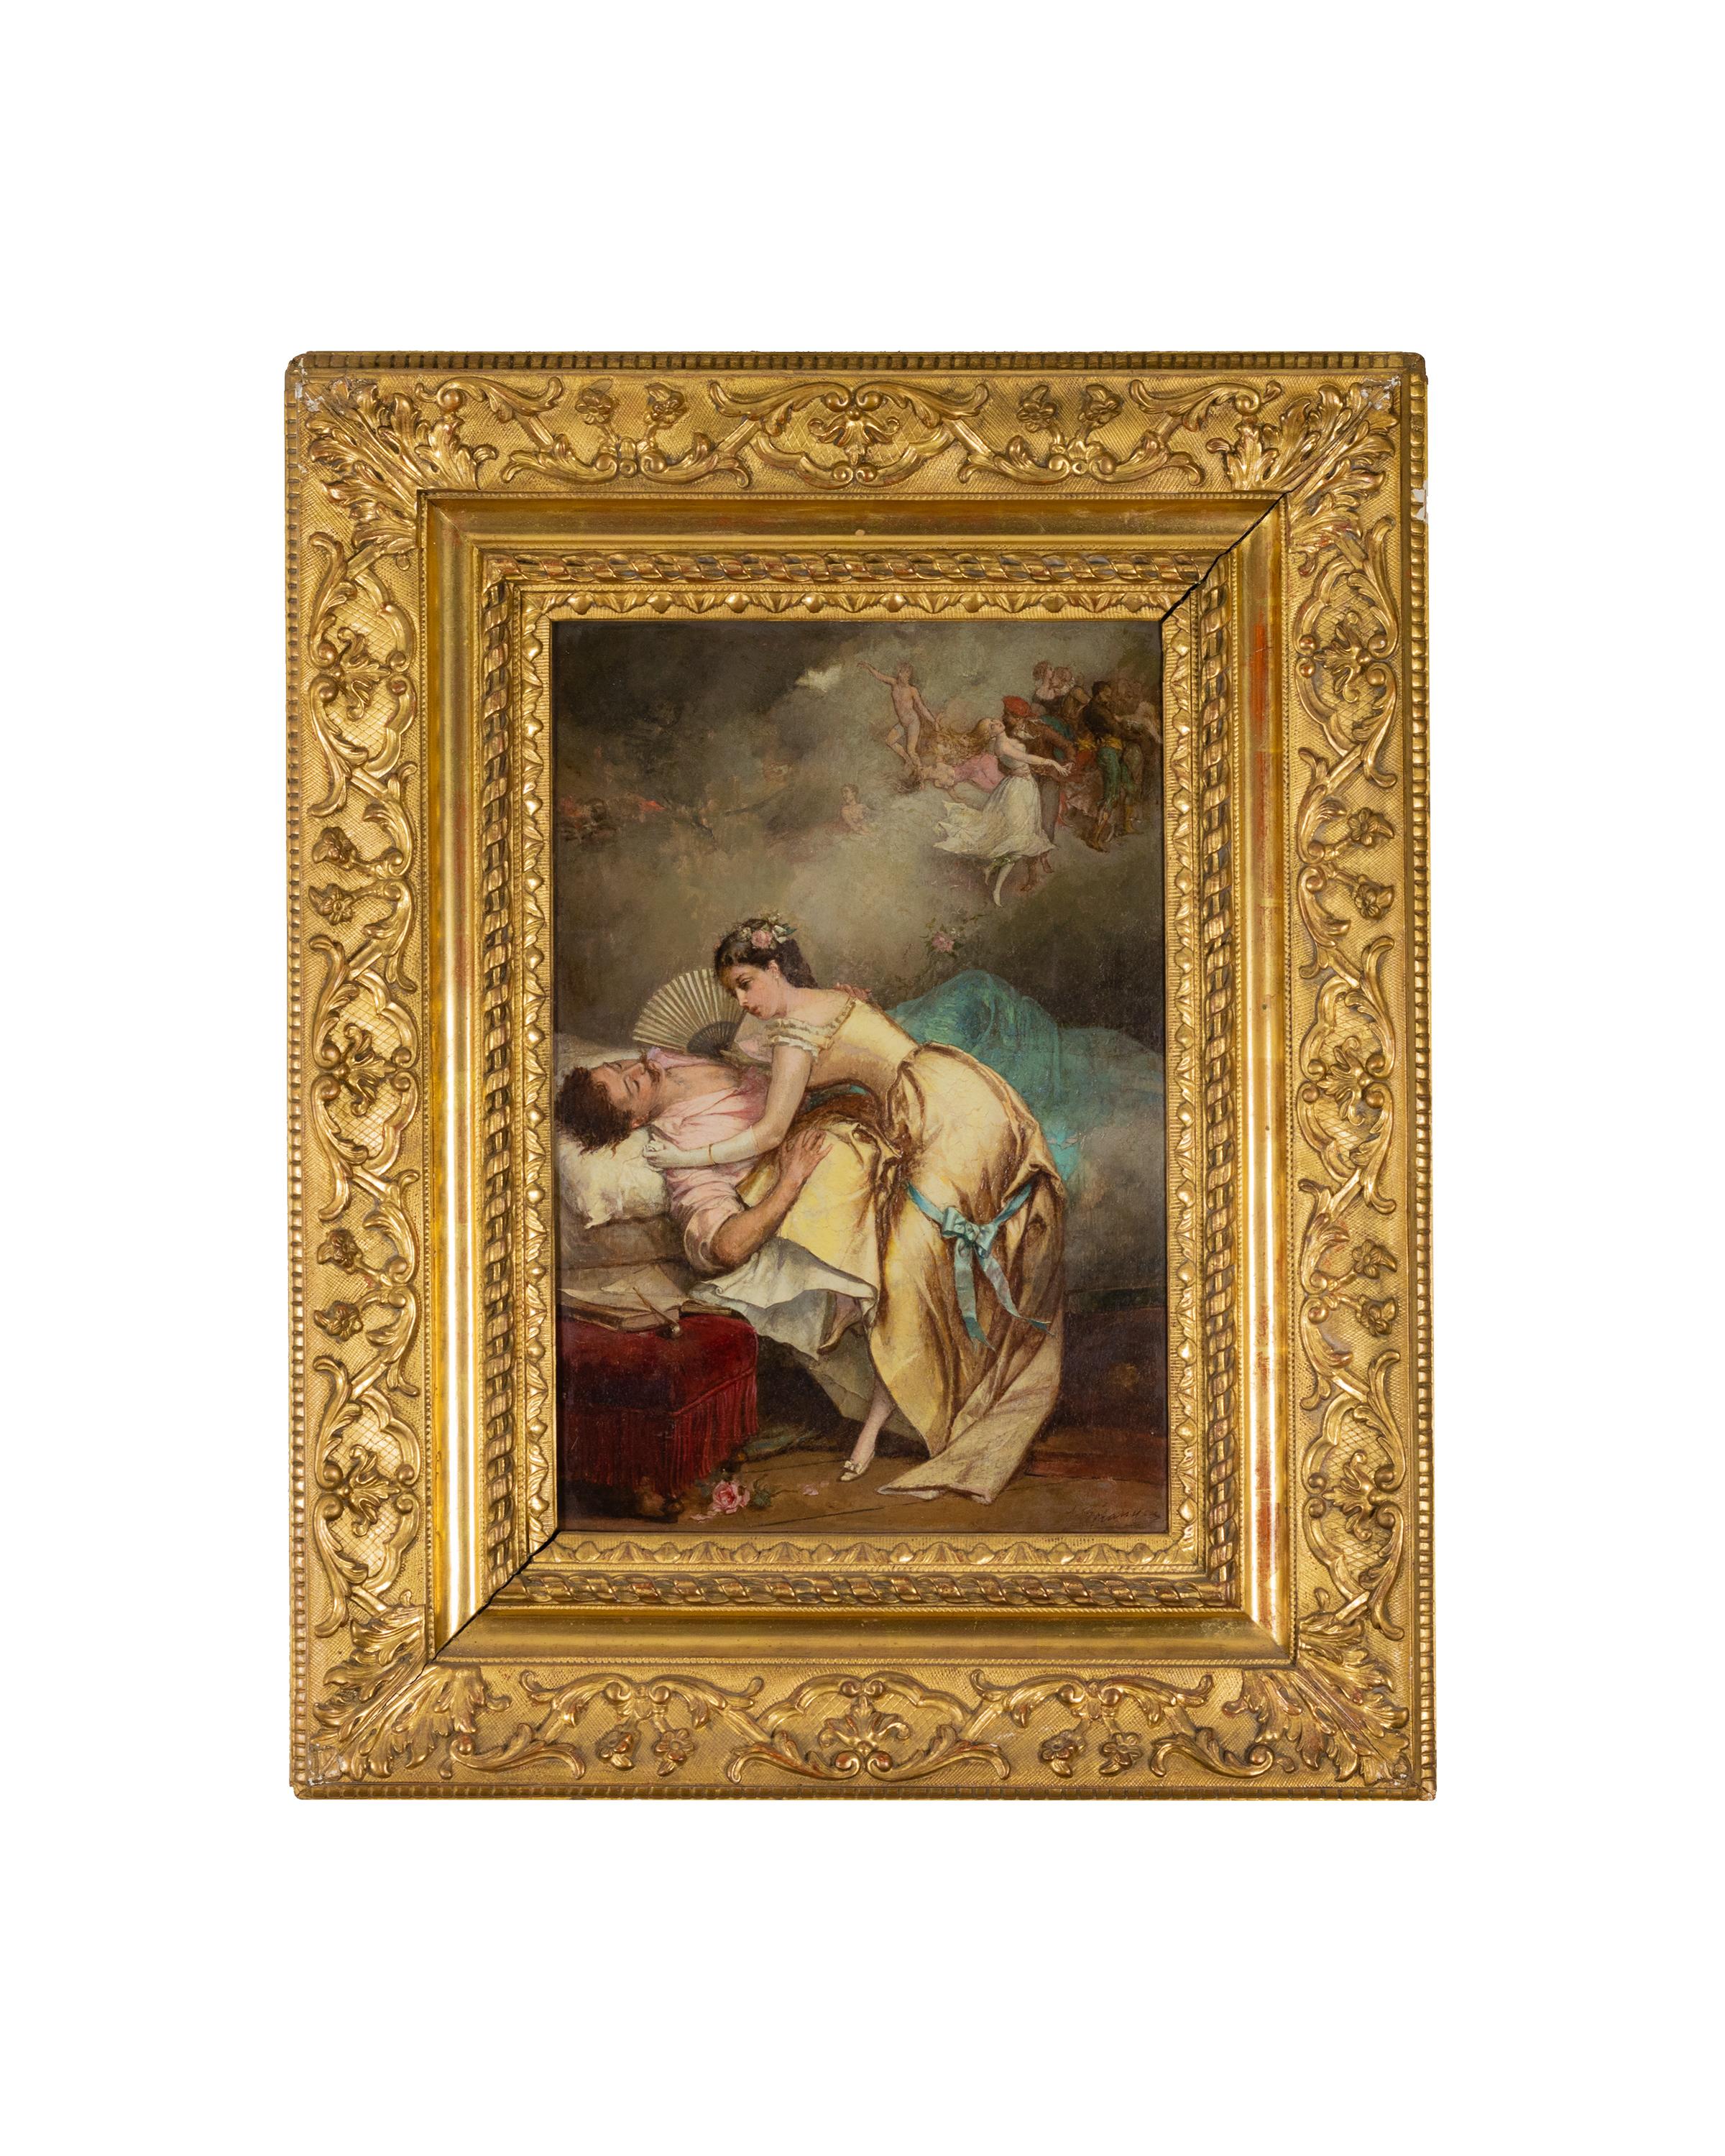 Tableau du XIXe siècle représentant un couple d'amoureux / scène galante d'inspiration gréco-romaine de l'école d'Antoine Watteau Watteau par Jean Baptiste Emile Béranger.

Signature 